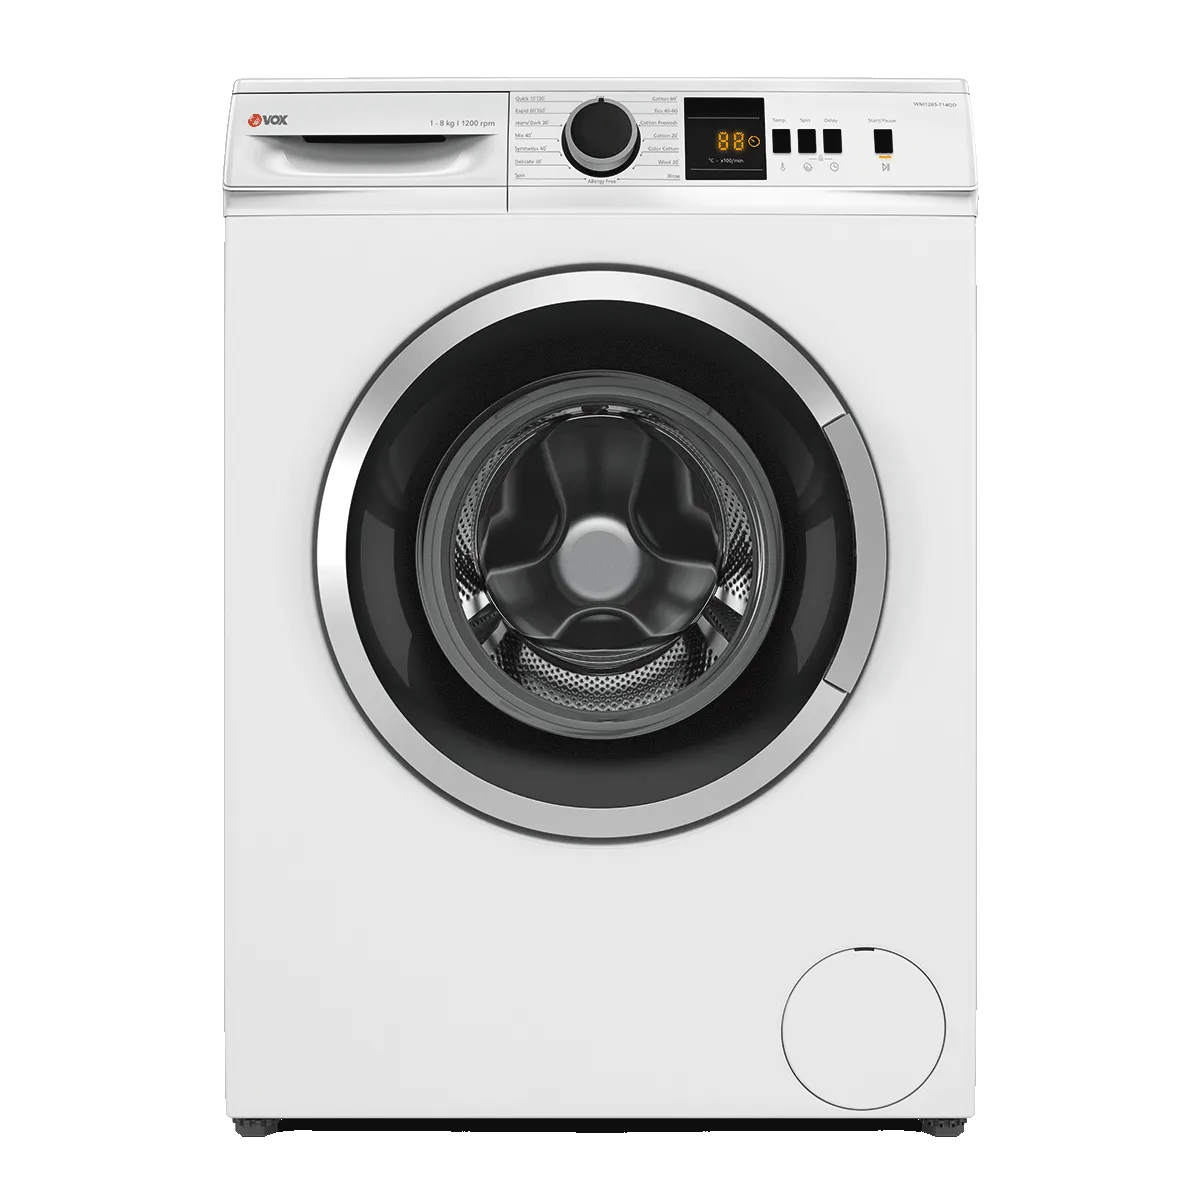 Машина за перење алишта WM1285-T14QD 